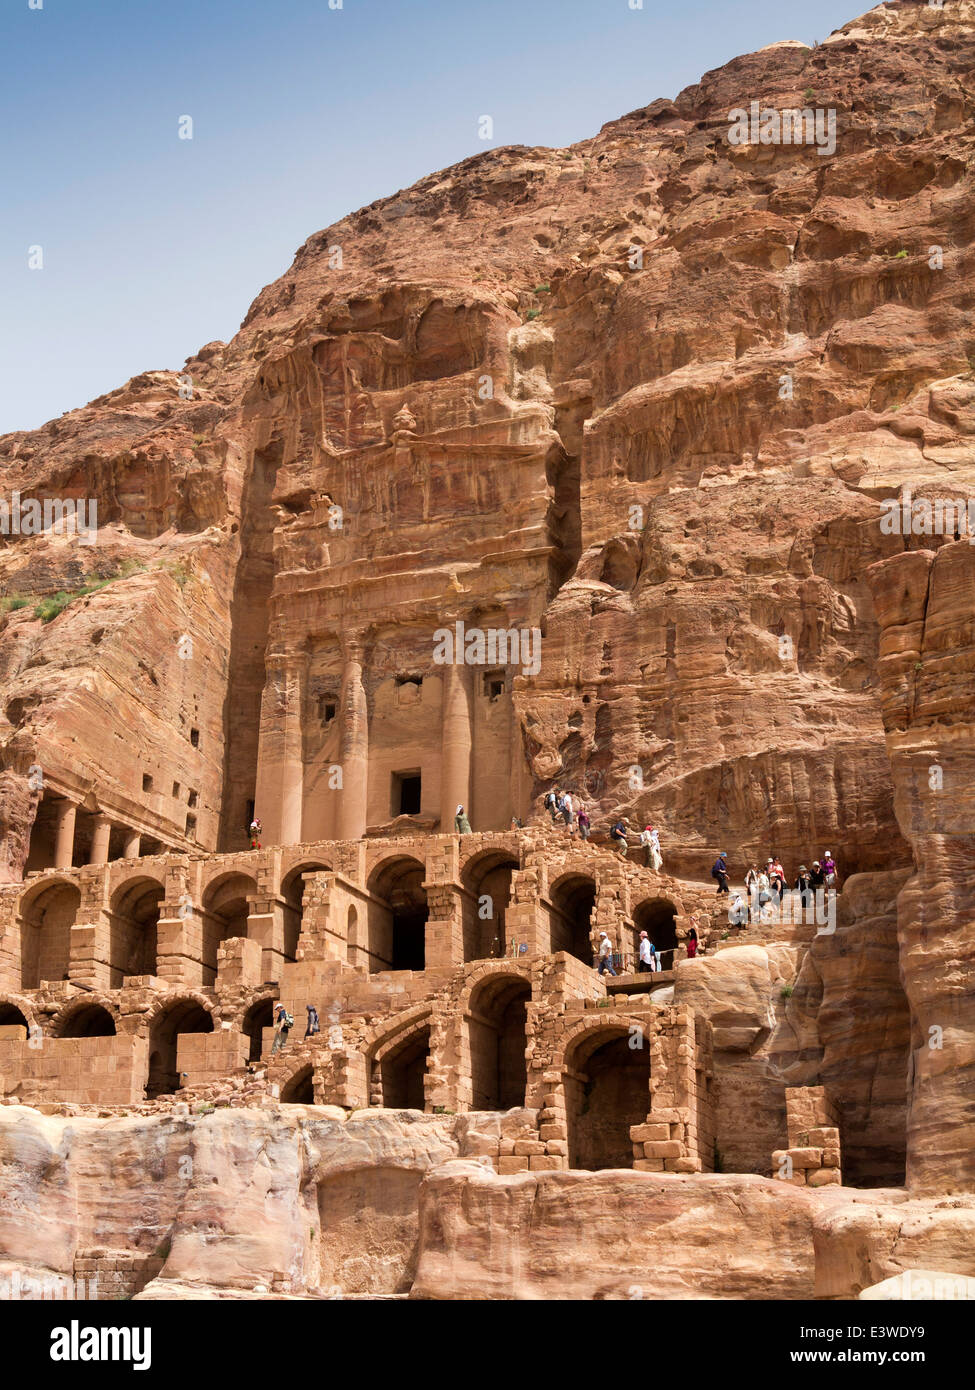 Jordan, Arabah, Petra, tourists at Urn tomb and Al Mahkama (law courts) Stock Photo